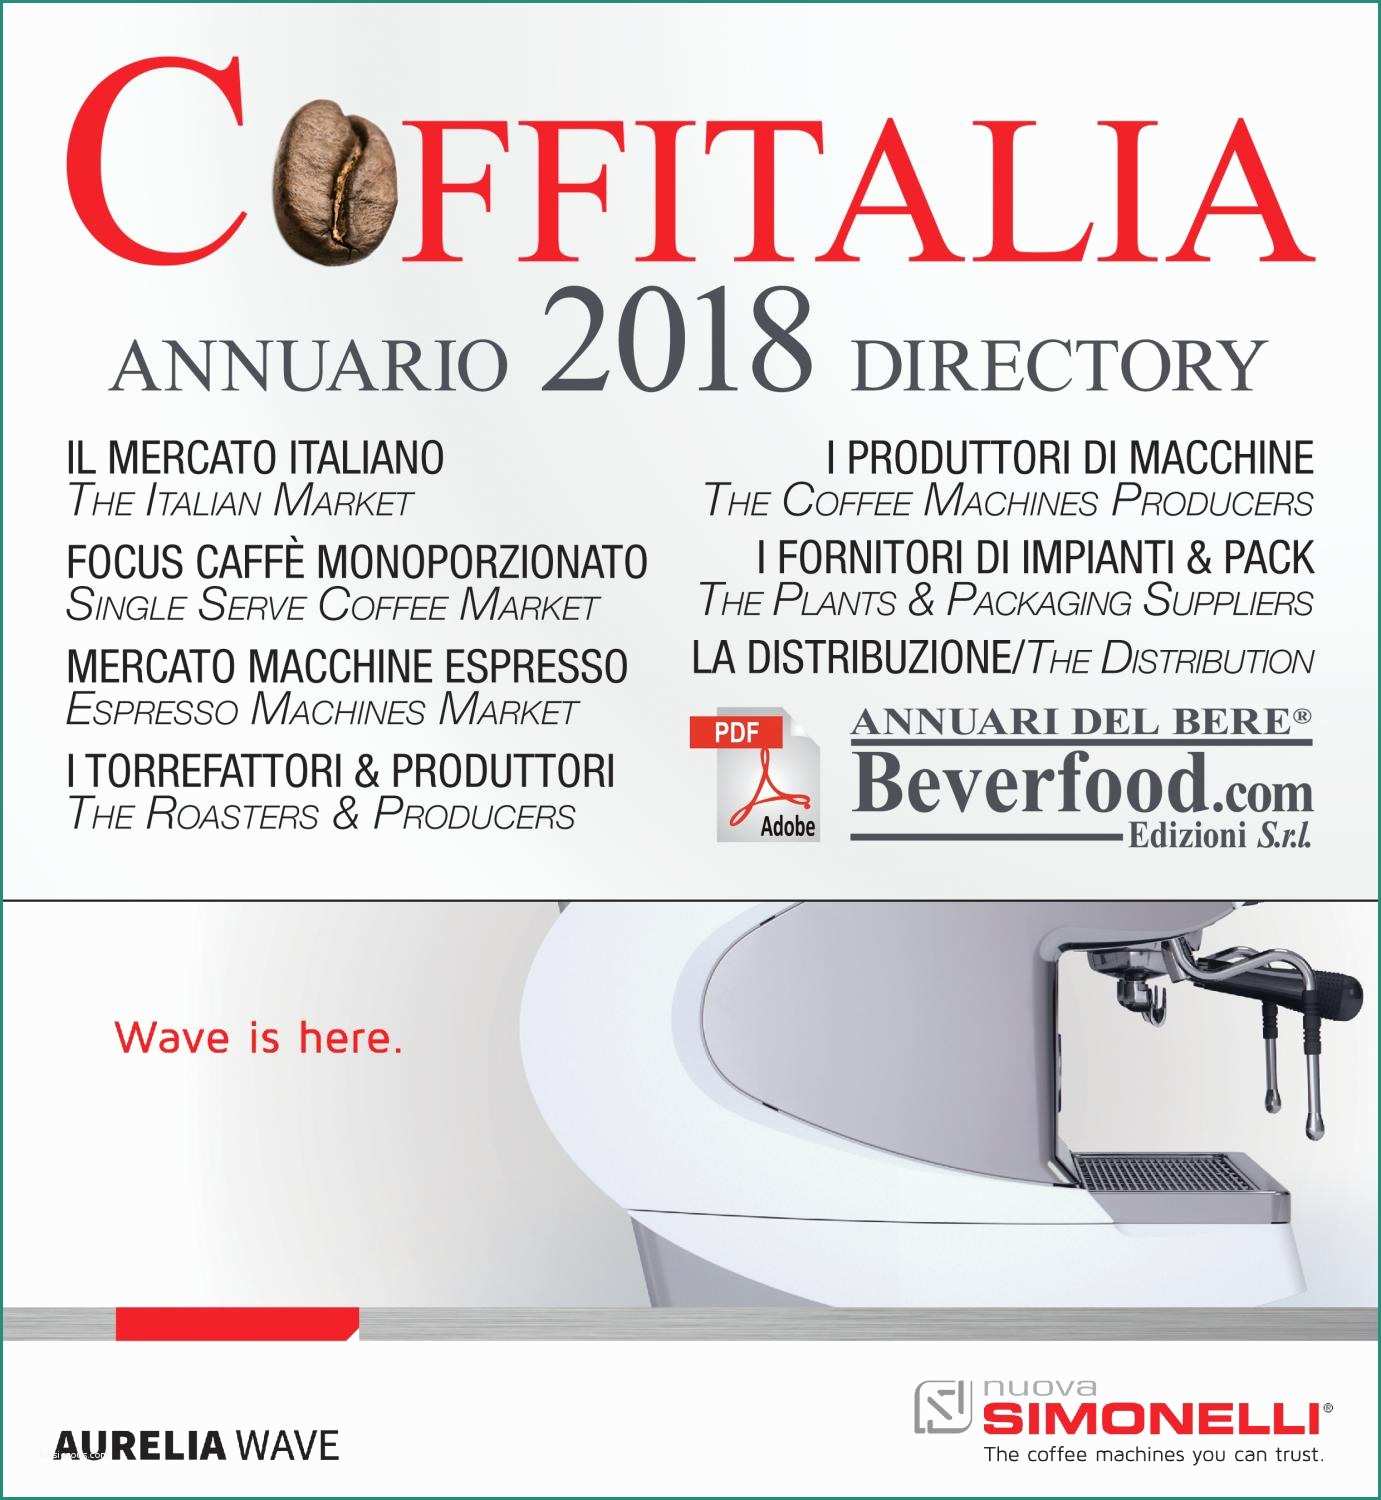 Esselunga Nuovo Catalogo E Coffitalia 2018 Annuario Caff¨ Italia by Marco Emanuele Muraca issuu